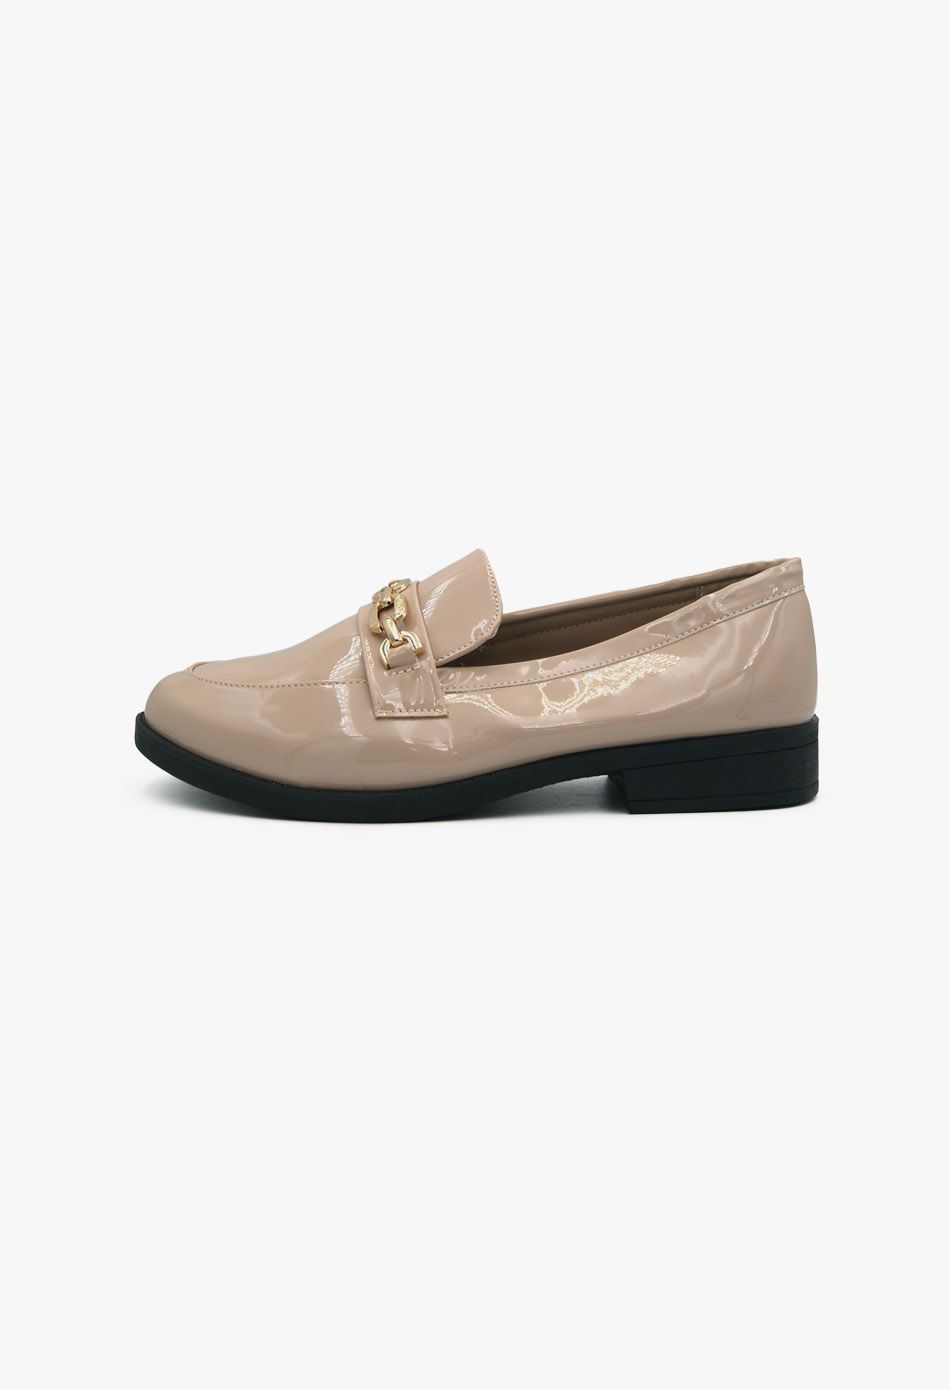 Γυναικεία Loafers σε Μπεζ Χρώμα Λουστρίνι / XY-622-beige Χαμηλά Παπούτσια joya.gr